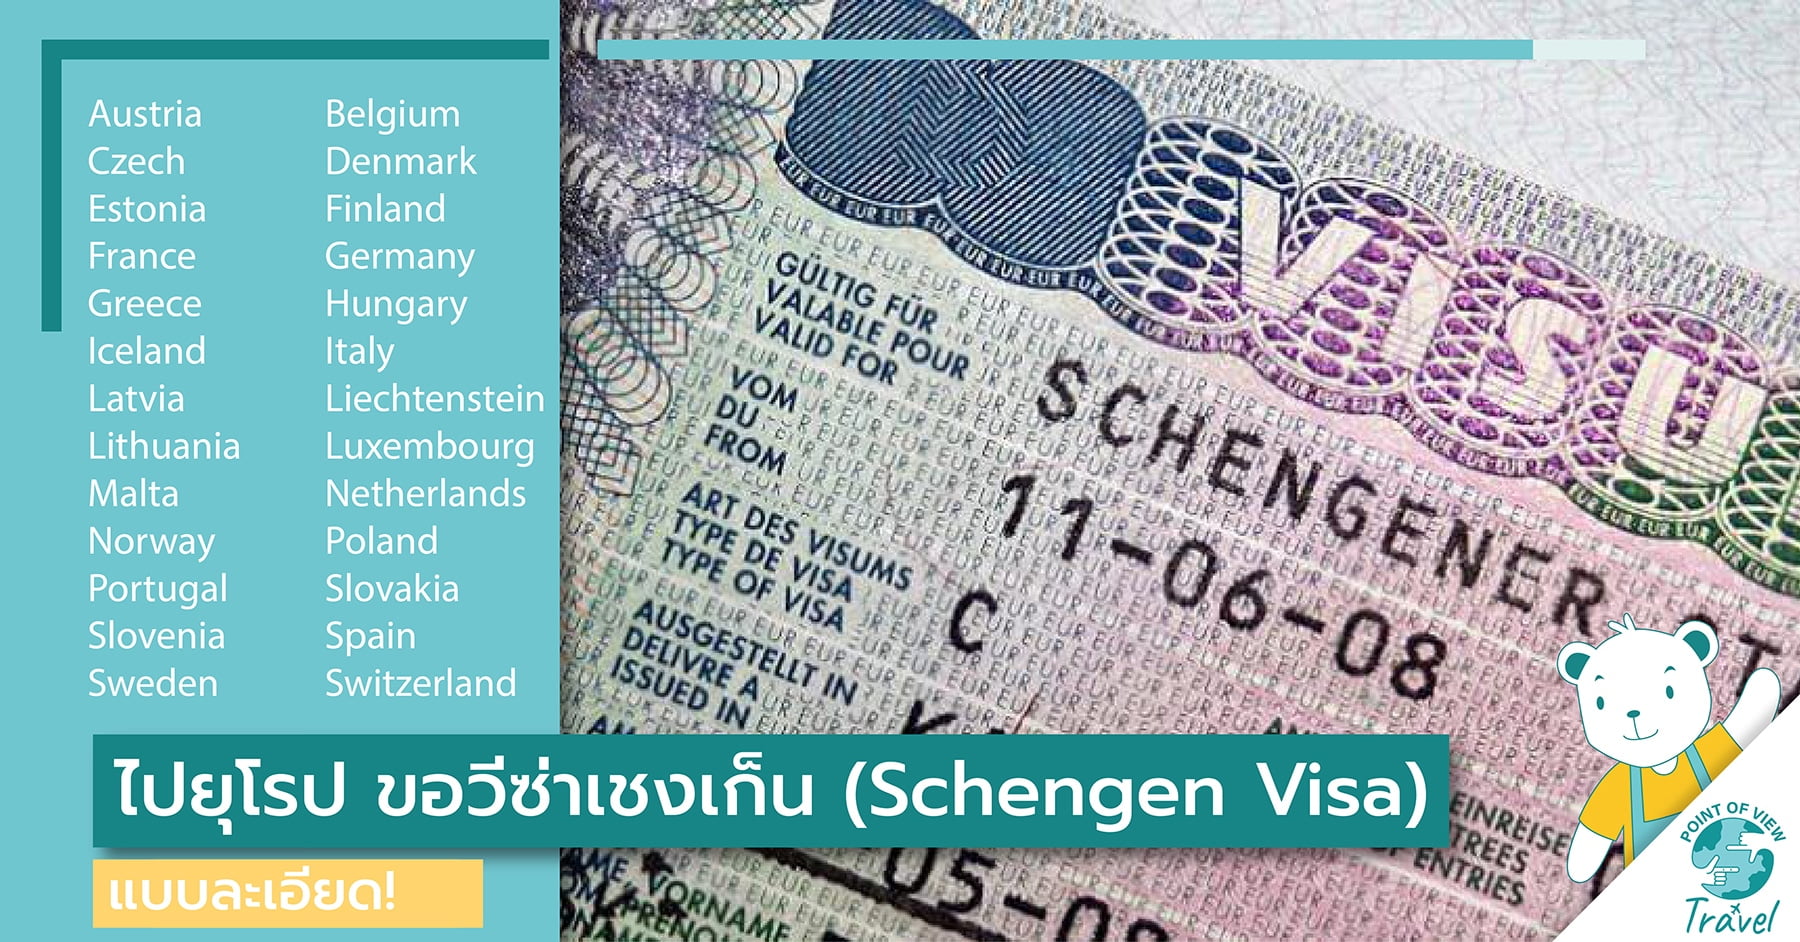 ไปยุโรป ขอวีซ่าเชงเก็น (Schengen Visa) แบบละเอียด!